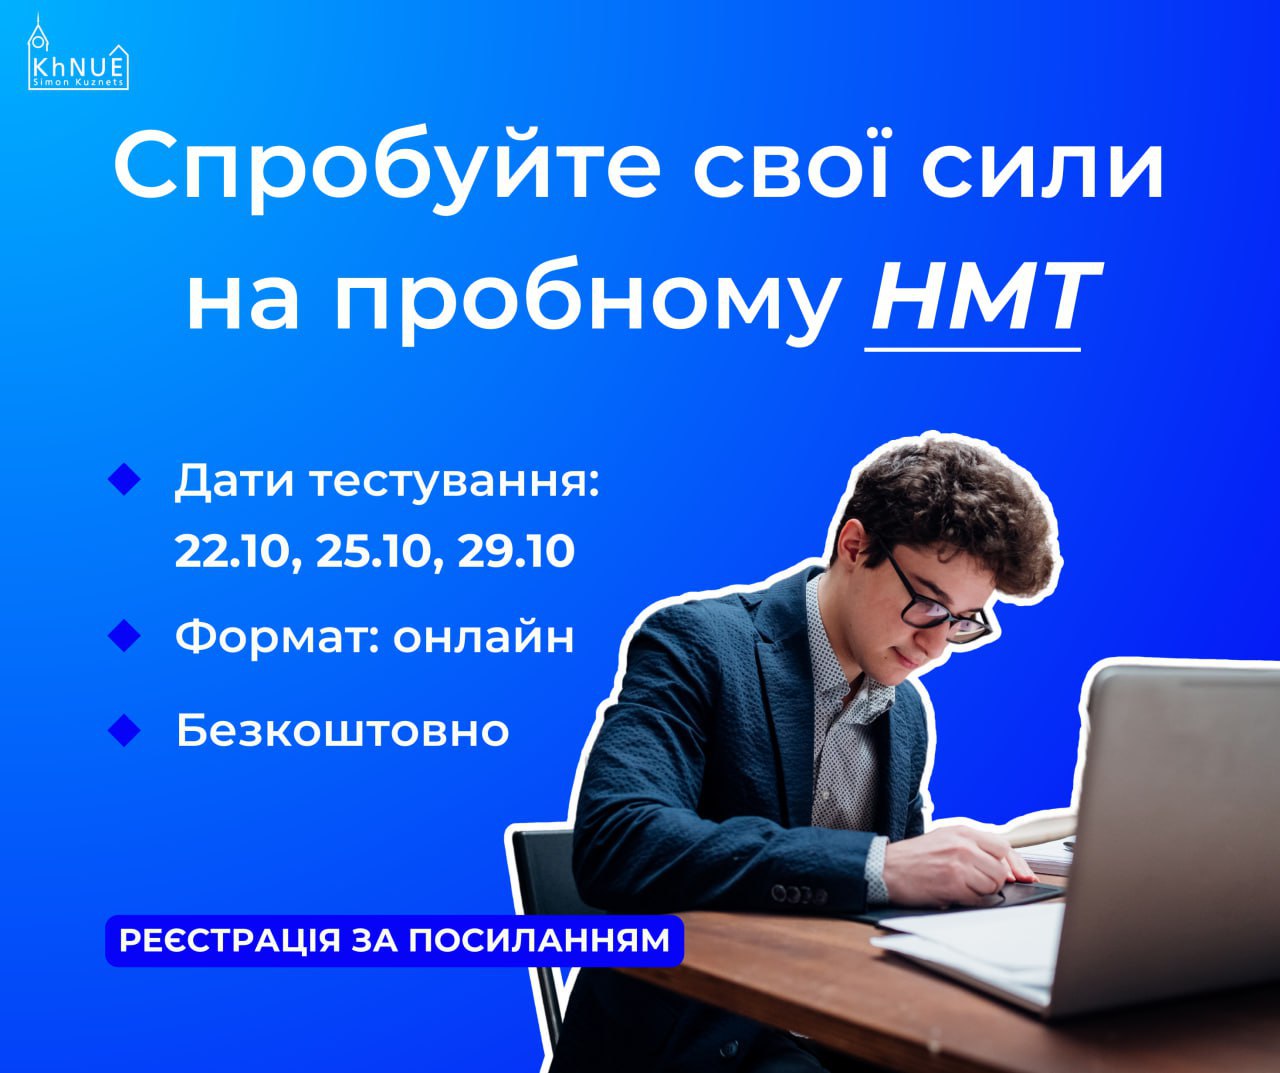 Харківських школярів запрошують на пробне НМТ